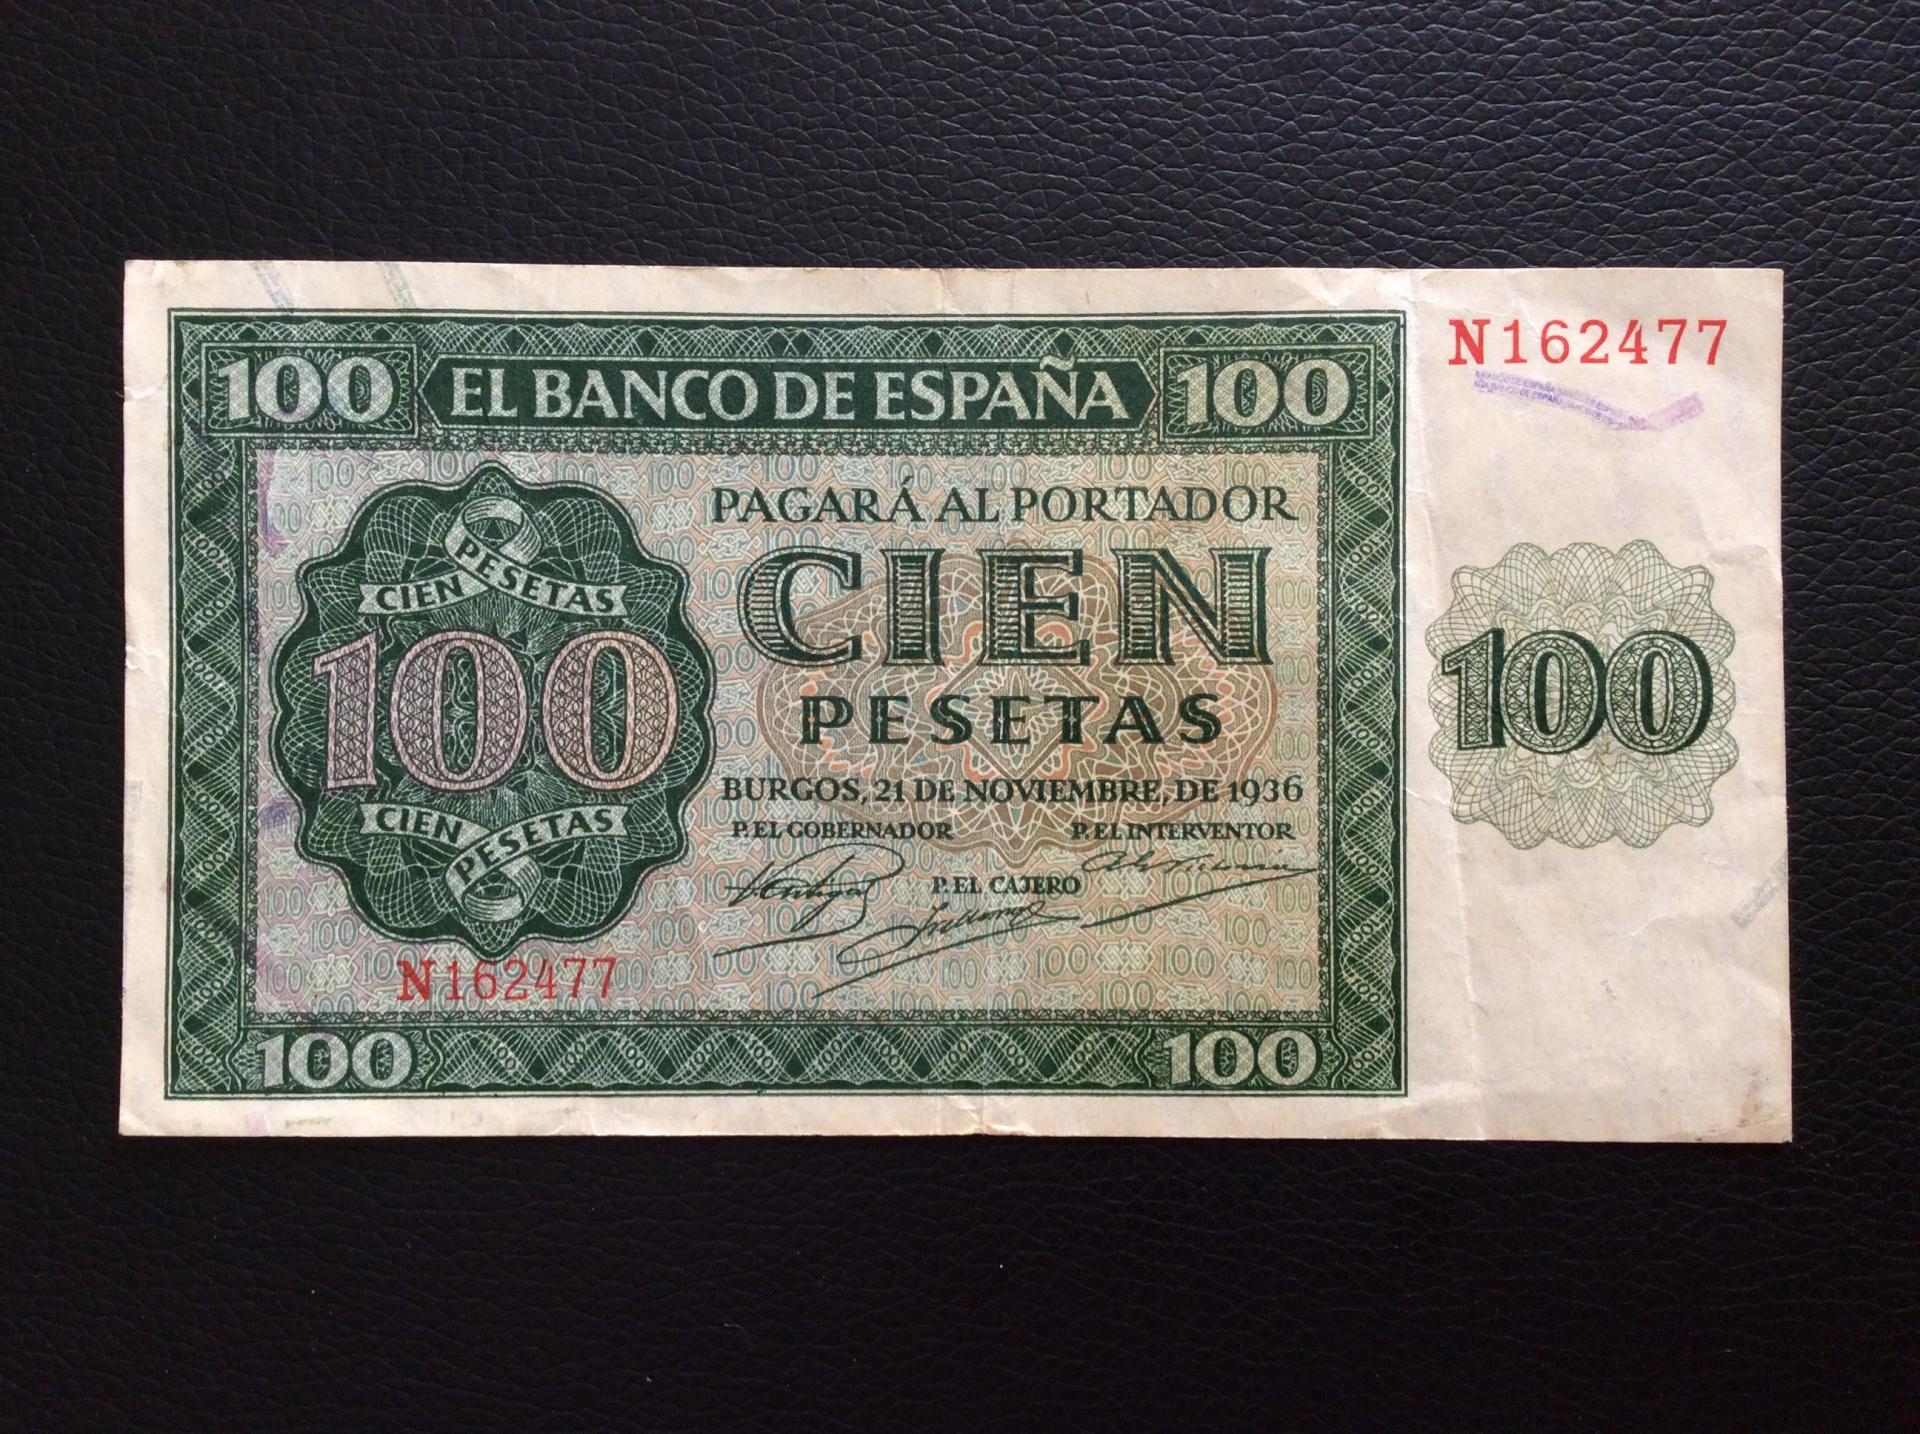 100 PESETAS 1936 - GUERRA CIVIL ESPAÑOLA - BURGOS 